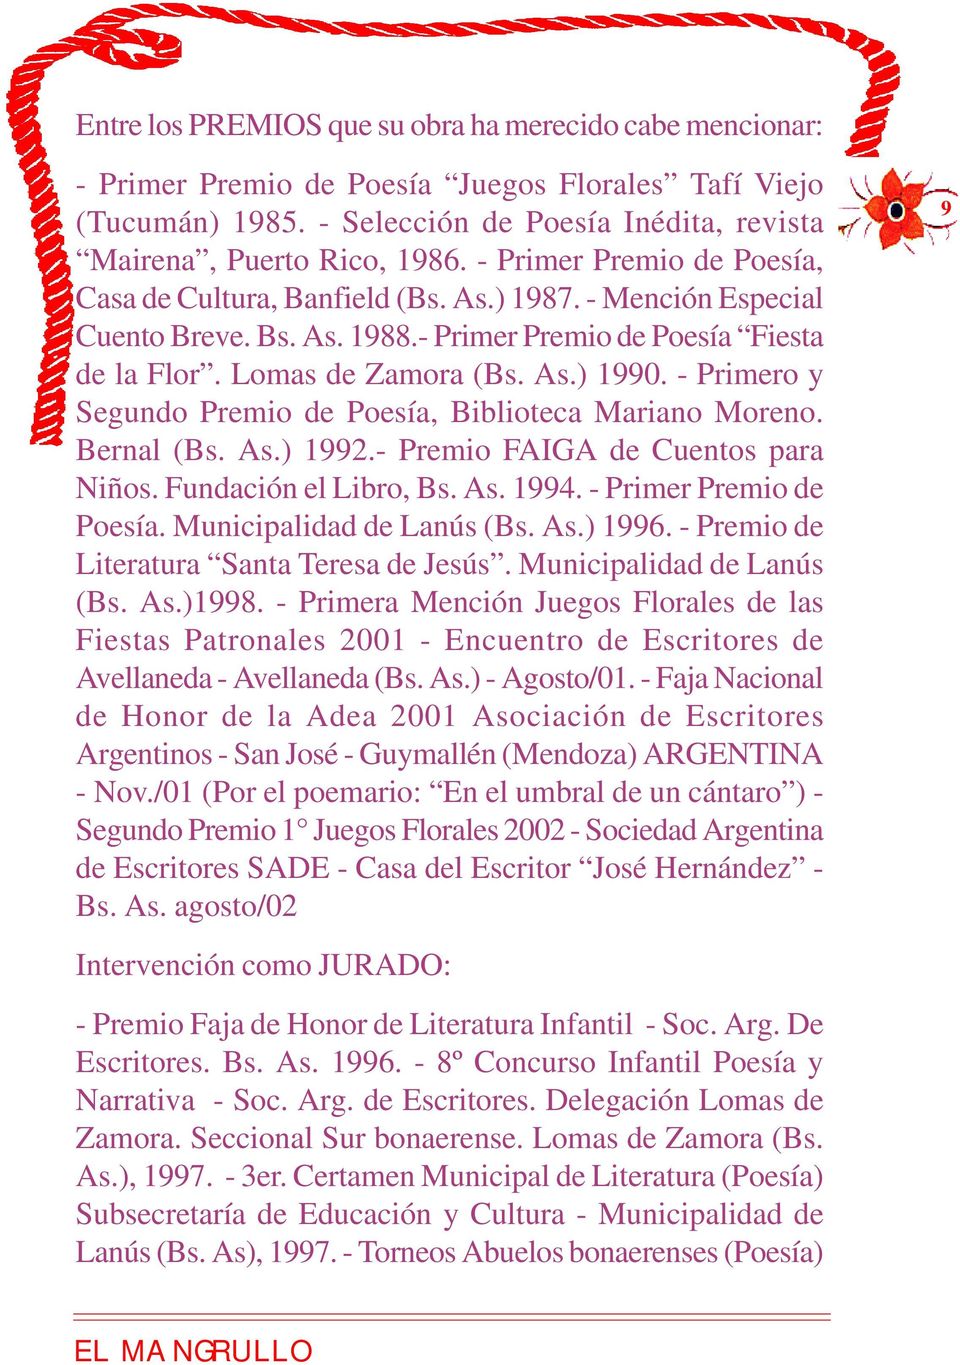 - Primero y Segundo Premio de Poesía, Biblioteca Mariano Moreno. Bernal (Bs. As.) 1992.- Premio FAIGA de Cuentos para Niños. Fundación el Libro, Bs. As. 1994. - Primer Premio de Poesía.